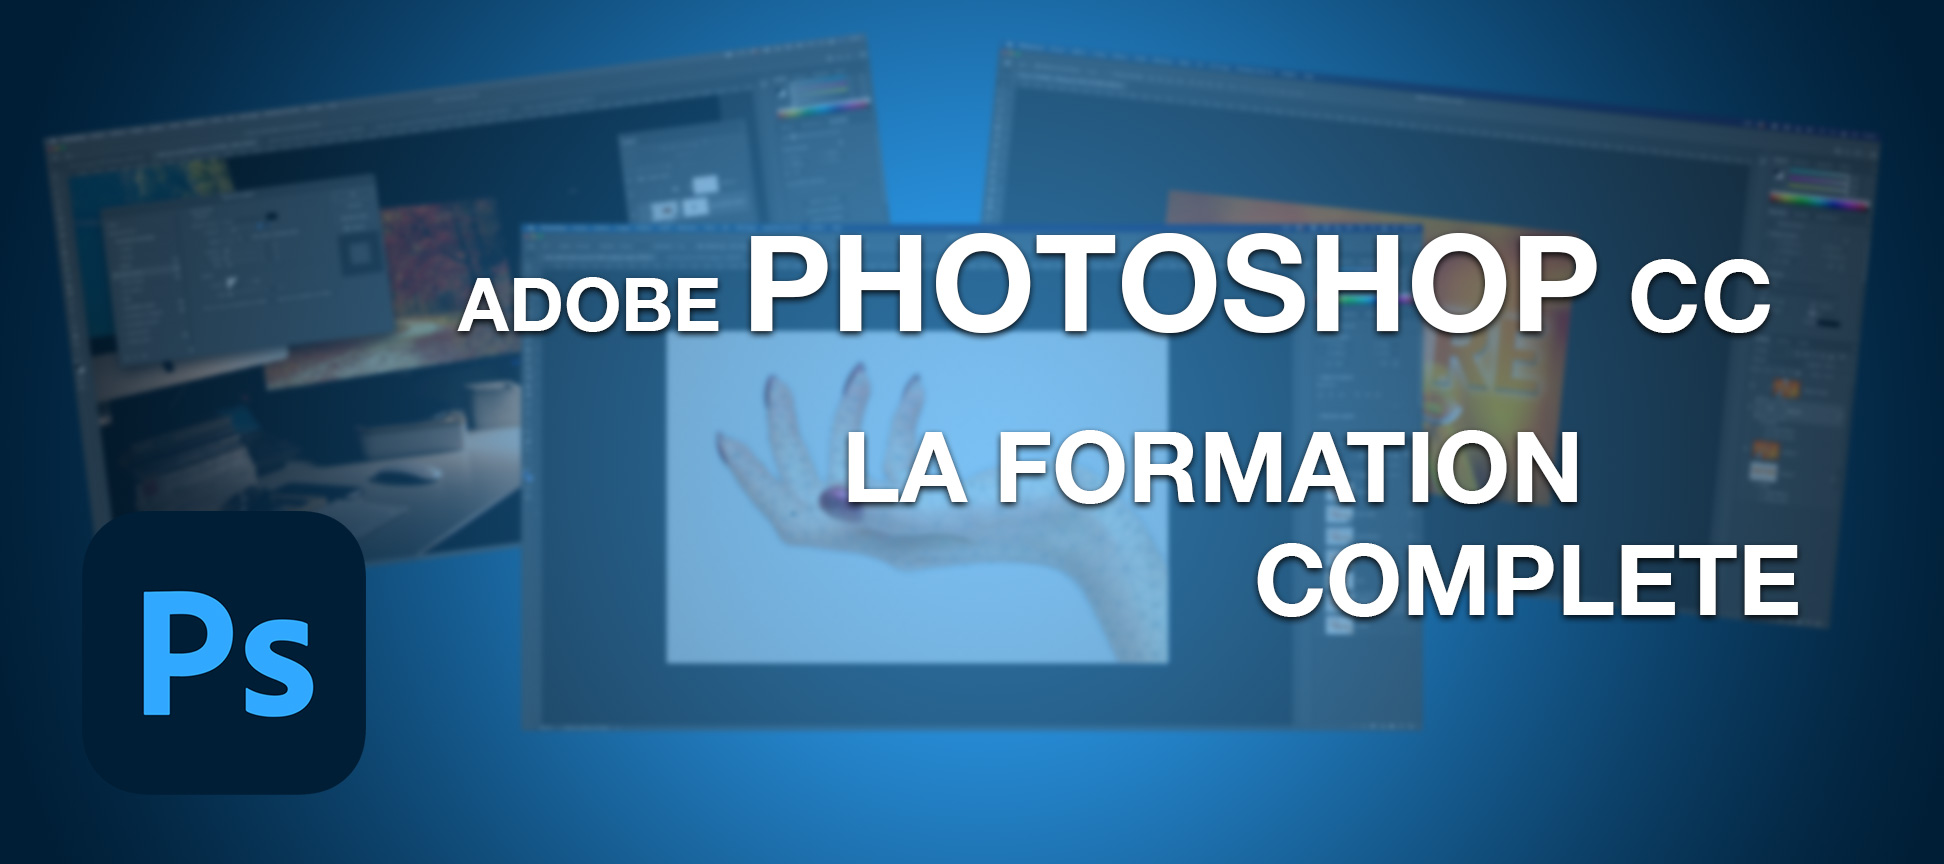 Adobe Photoshop CC la formation complète en vidéo